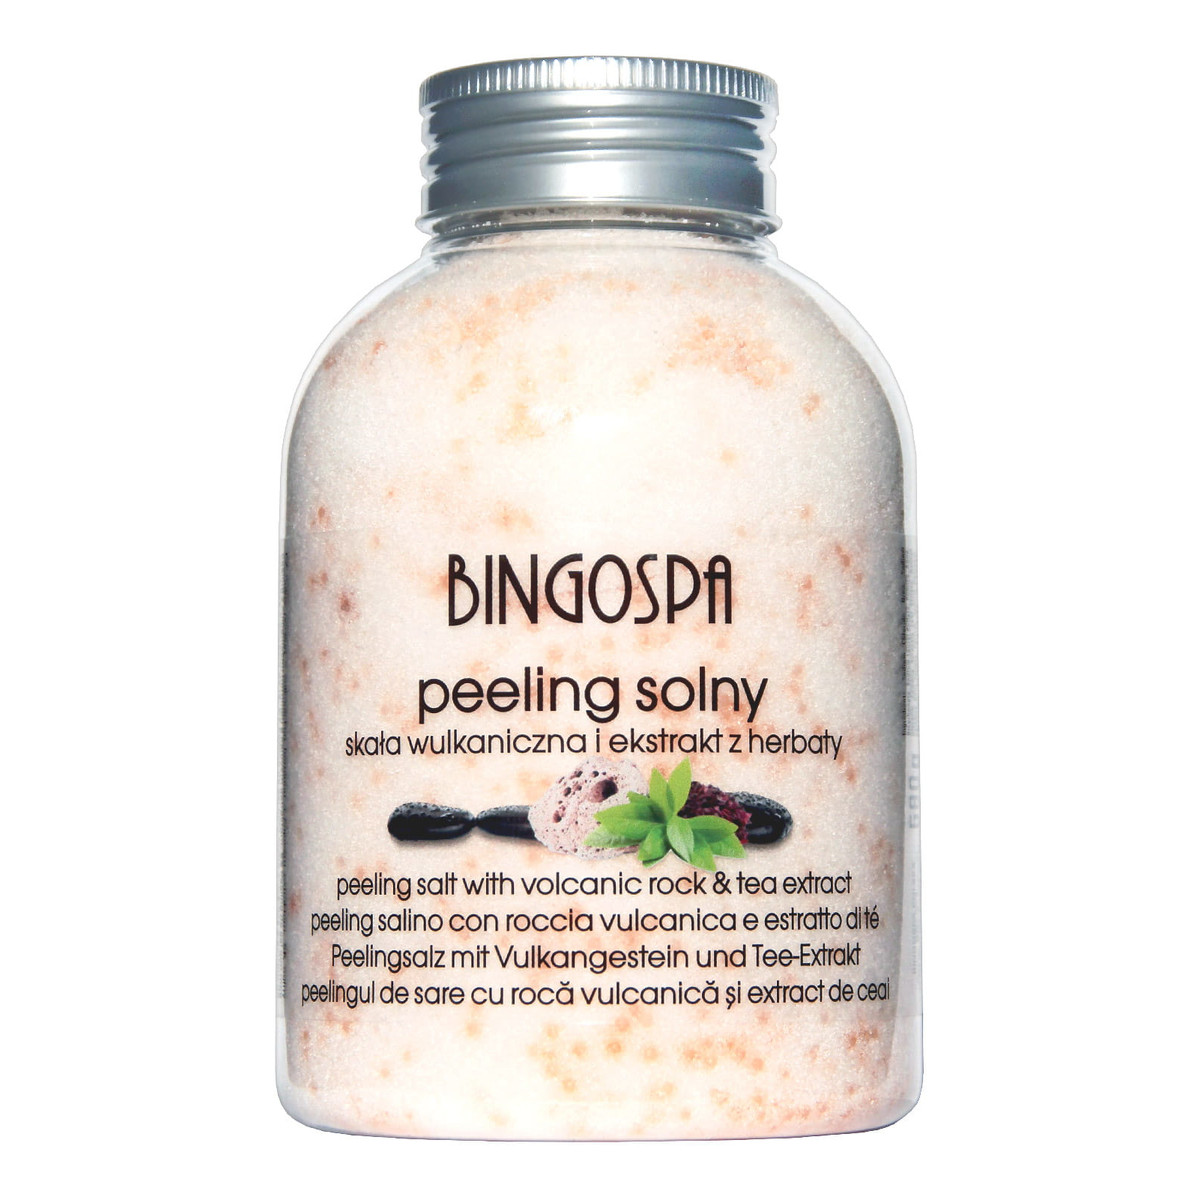 BingoSpa Peeling solny skała wulkaniczna czerwona herbata 580g